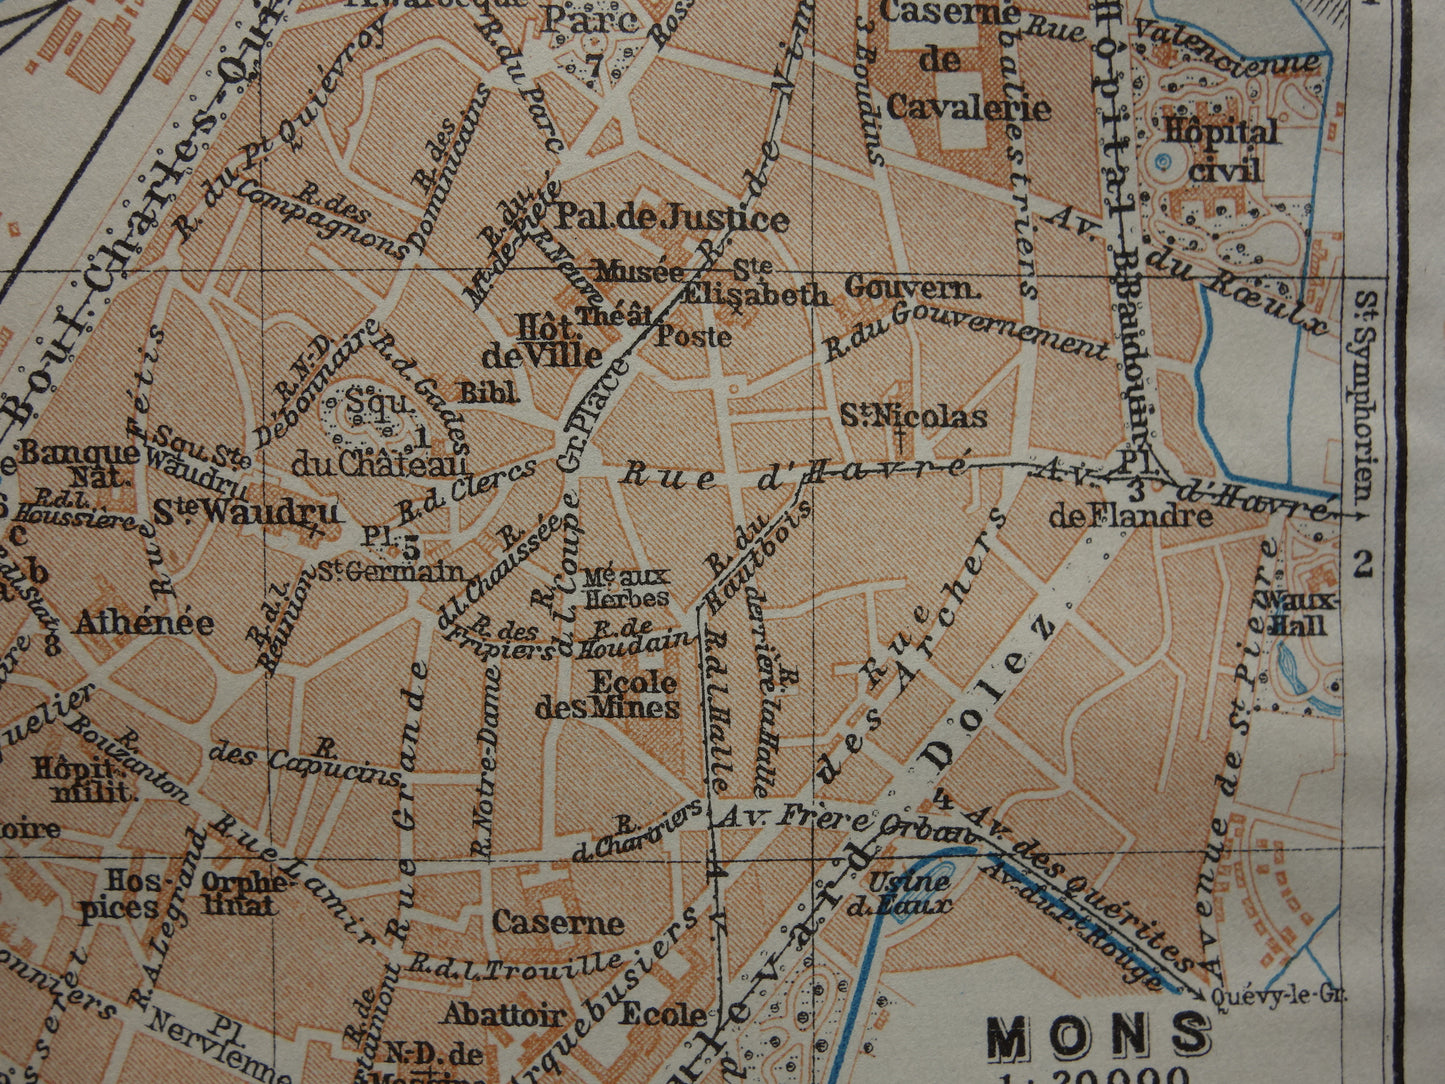 MONS oude kaart van Bergen België uit 1914 kleine originele antieke plattegrond landkaart Mons / Bergen